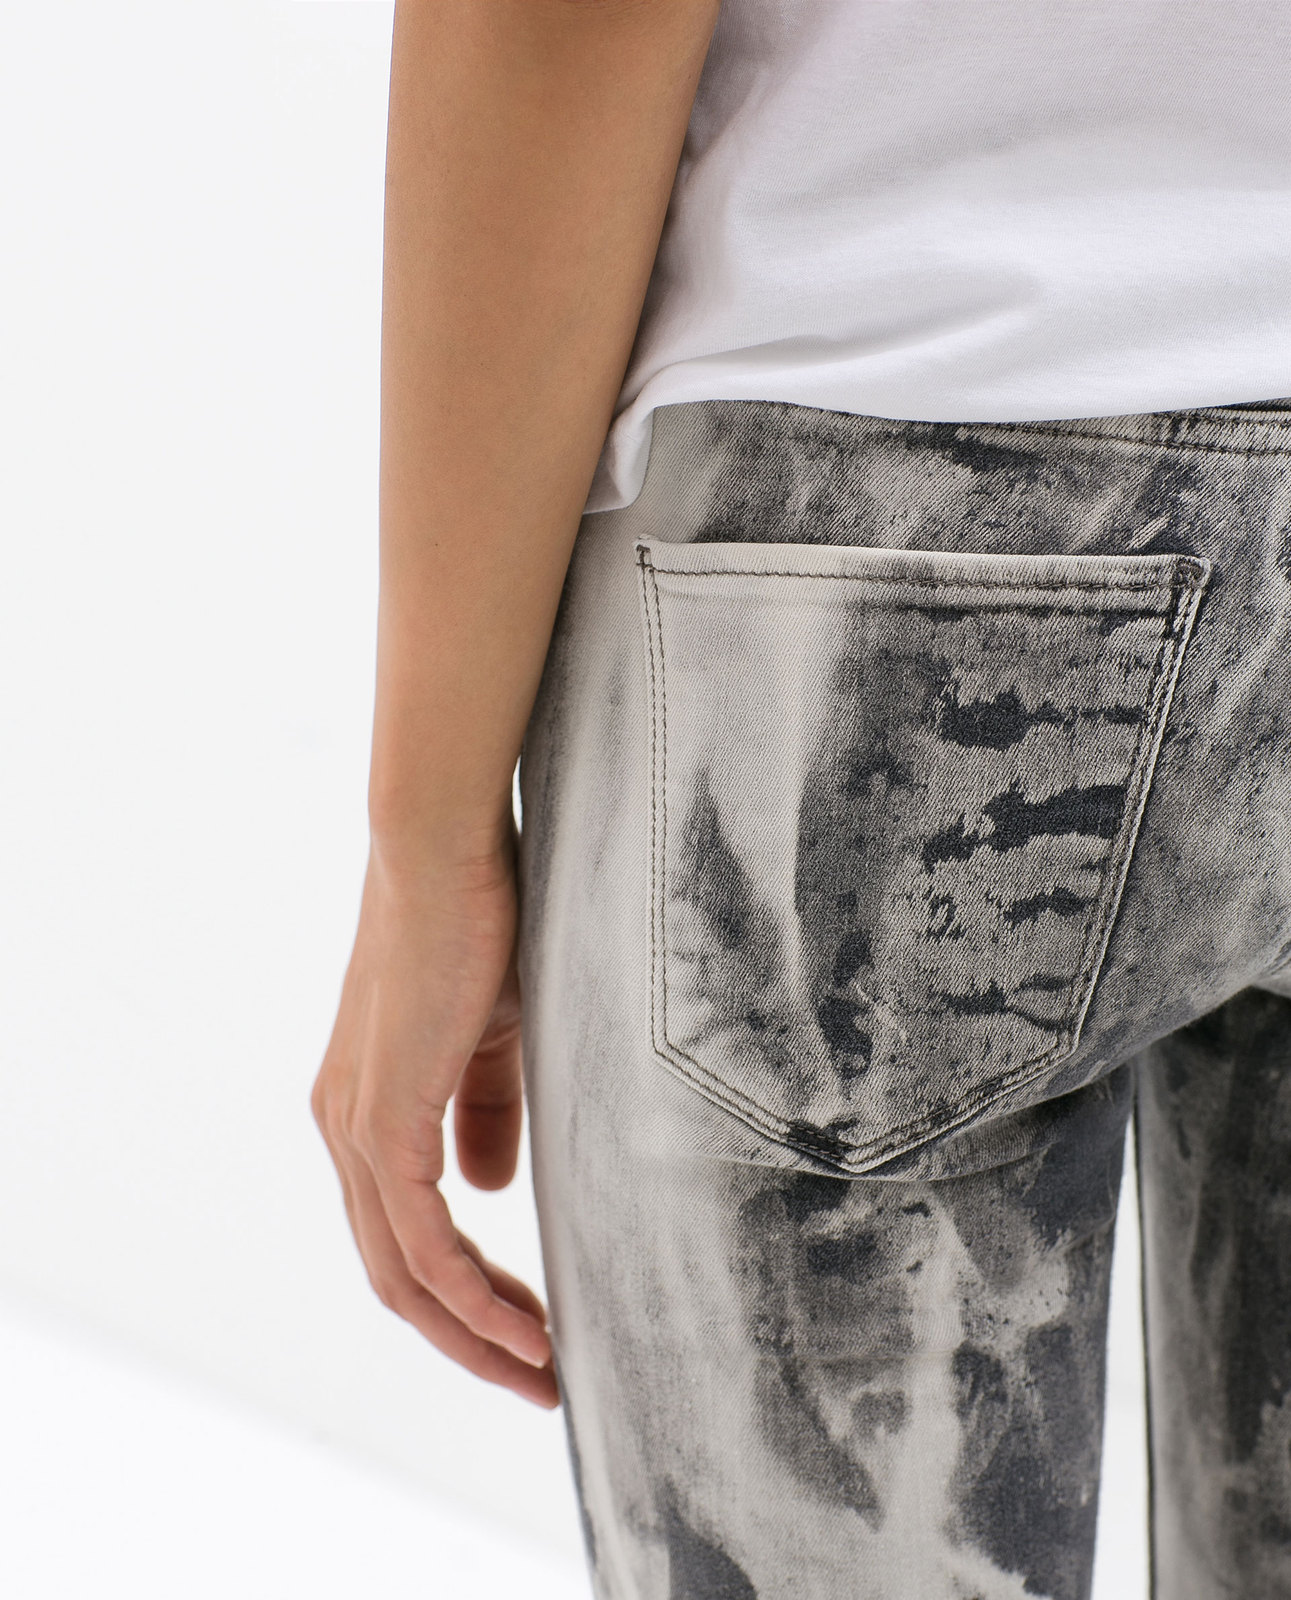 Zara tie-dye jeans 2014.4.15 #56509 fotója